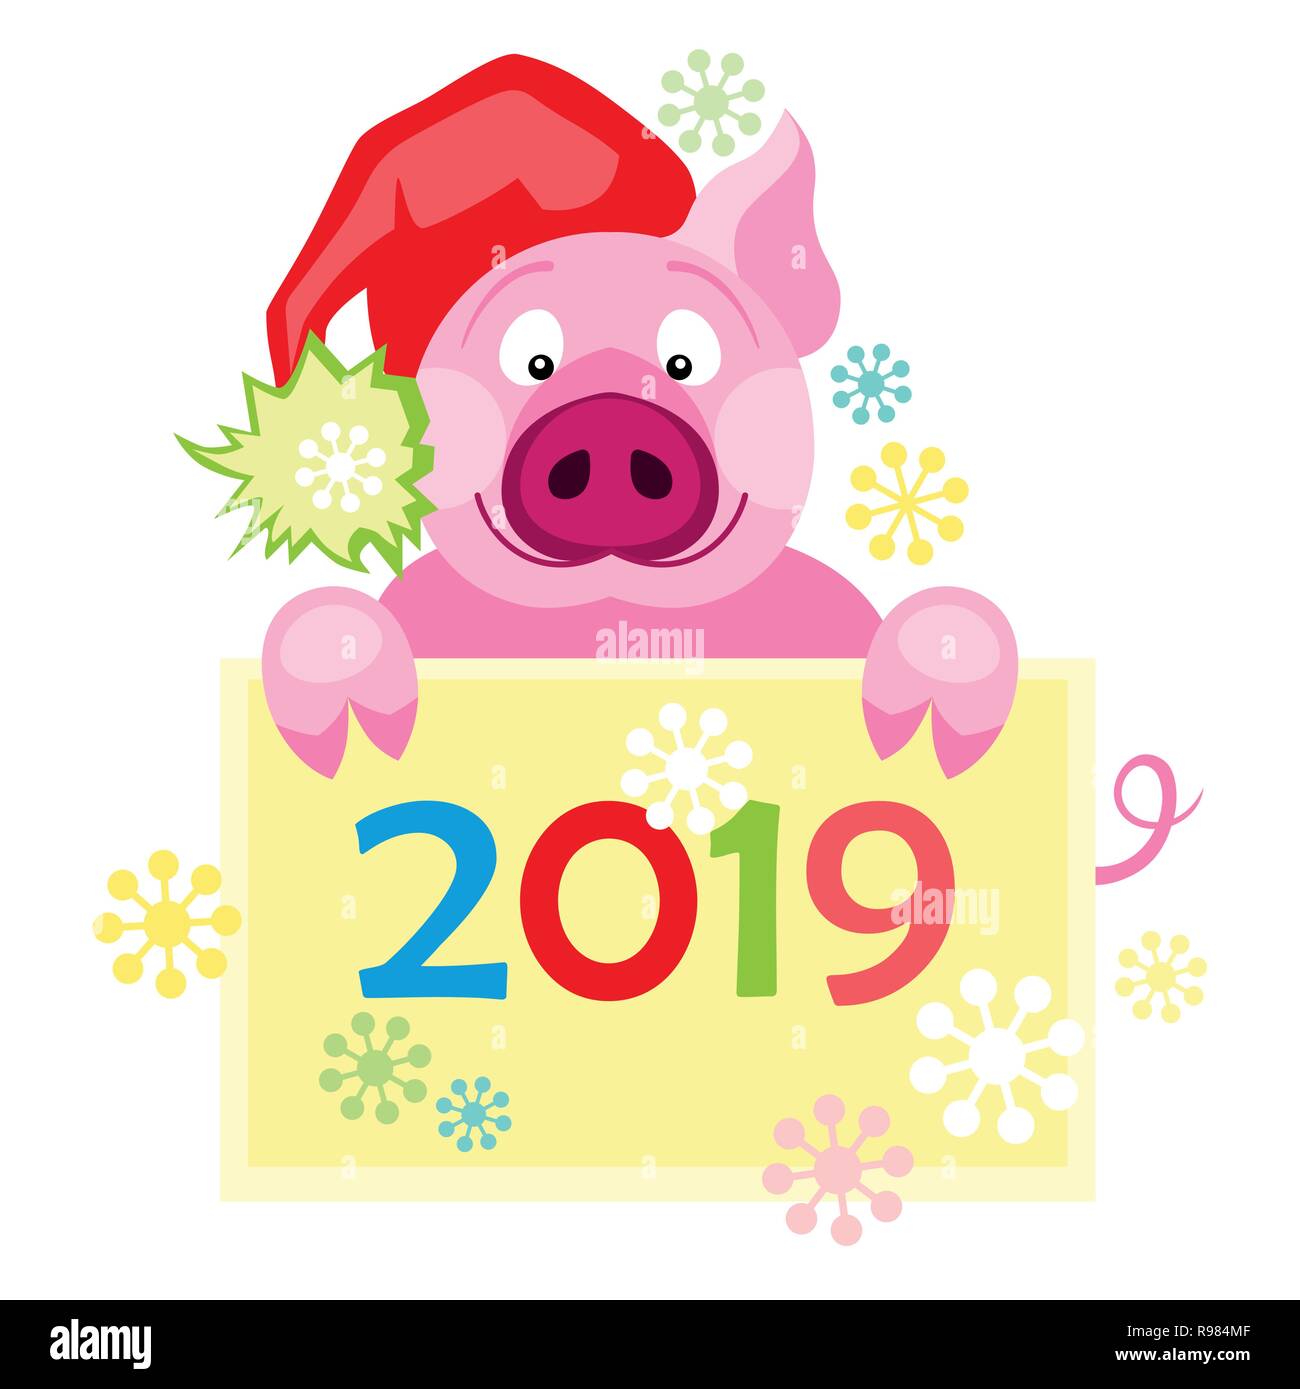 Neues Jahr 2019 Karte mit niedlichen Schwein. Symbol für das Jahr im chinesischen Kalender Stock Vektor